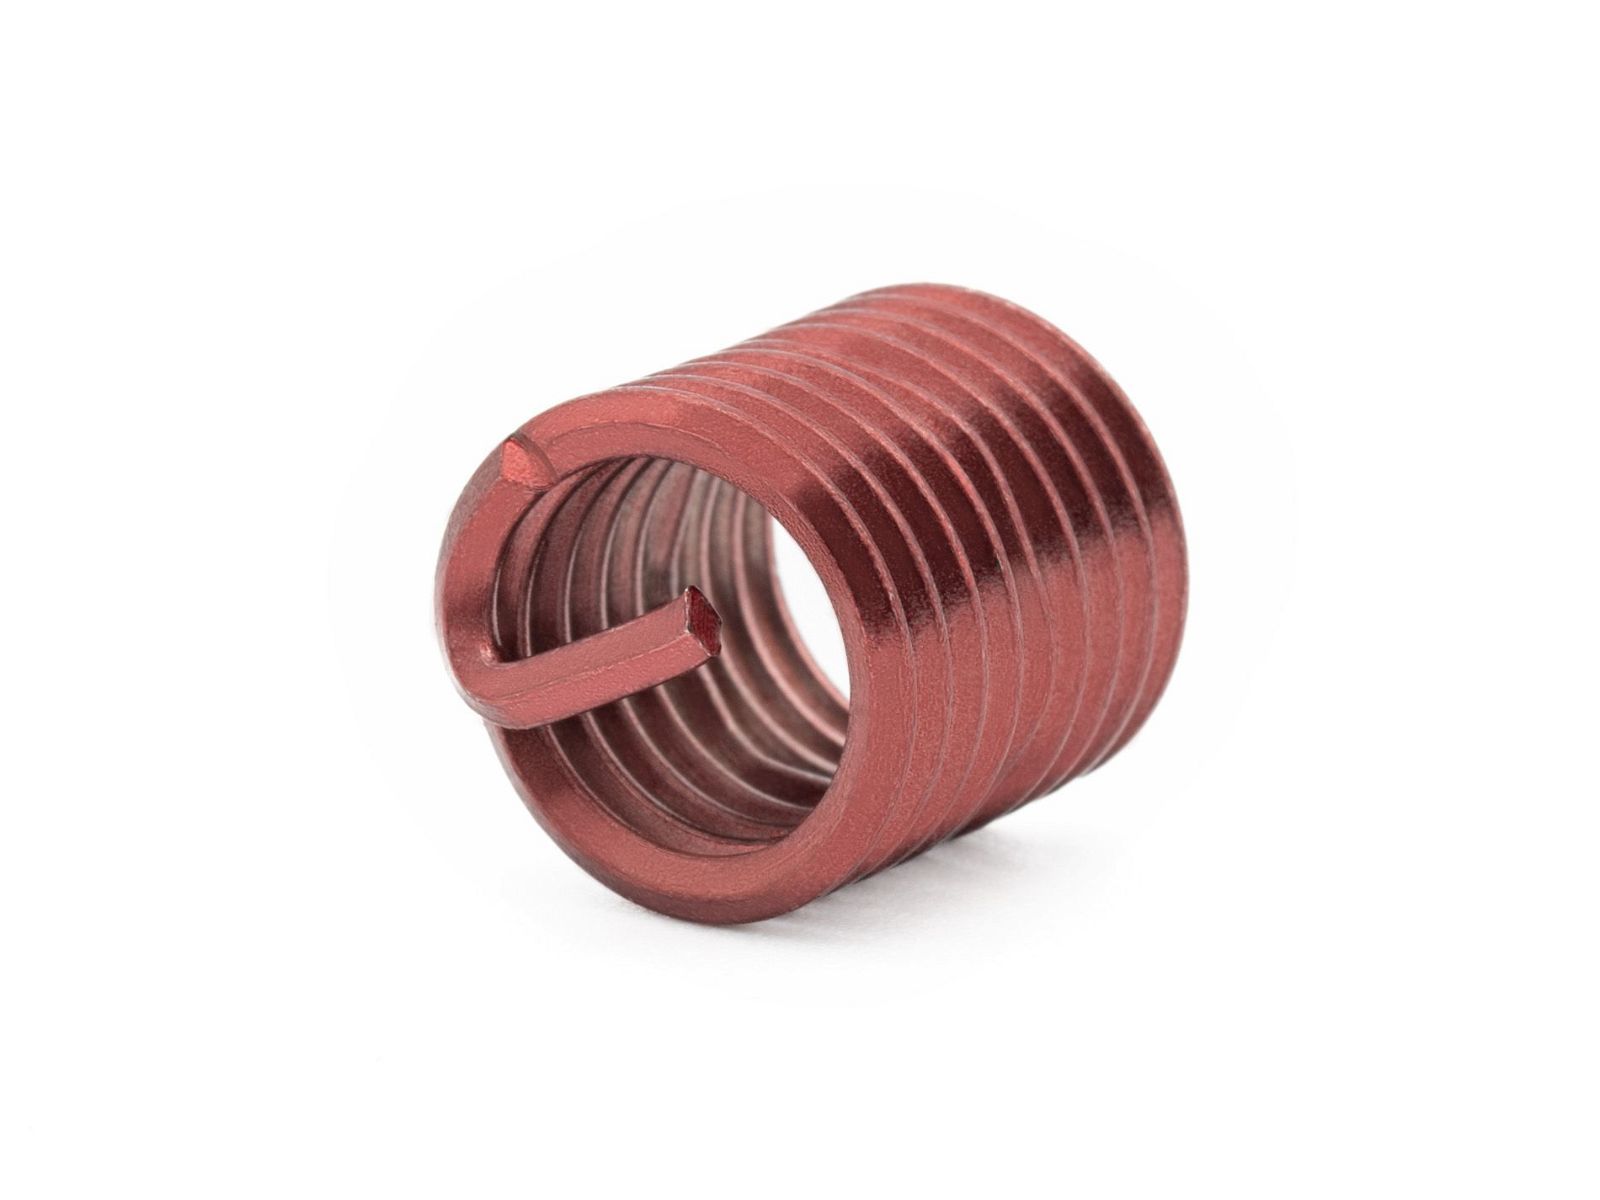 BaerCoil Wire Thread Inserts UNC 1/4 x 20 - 1.5 D (9.53 mm) - screw grip (screw locking) - 100 pcs.